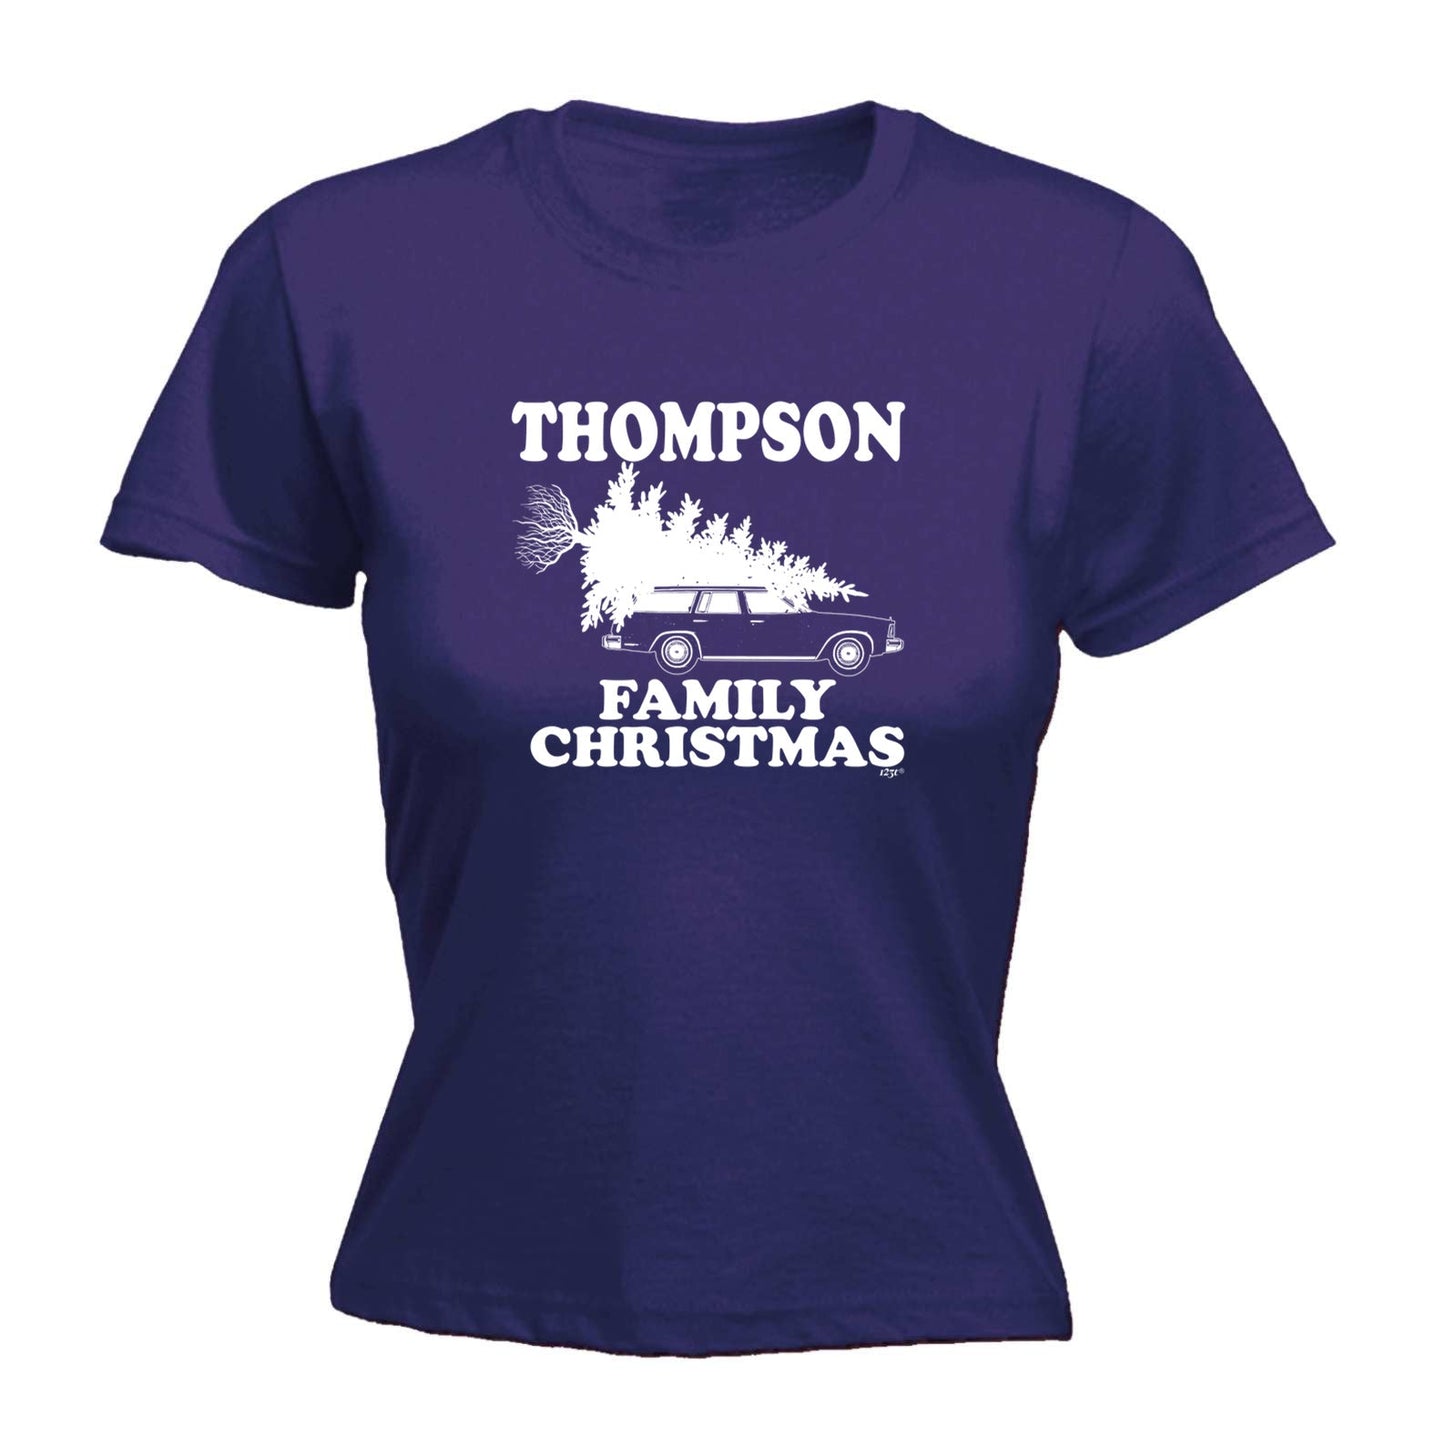 Family Christmas Thompson - Xmas Novelty Womens T-Shirt Tshirt